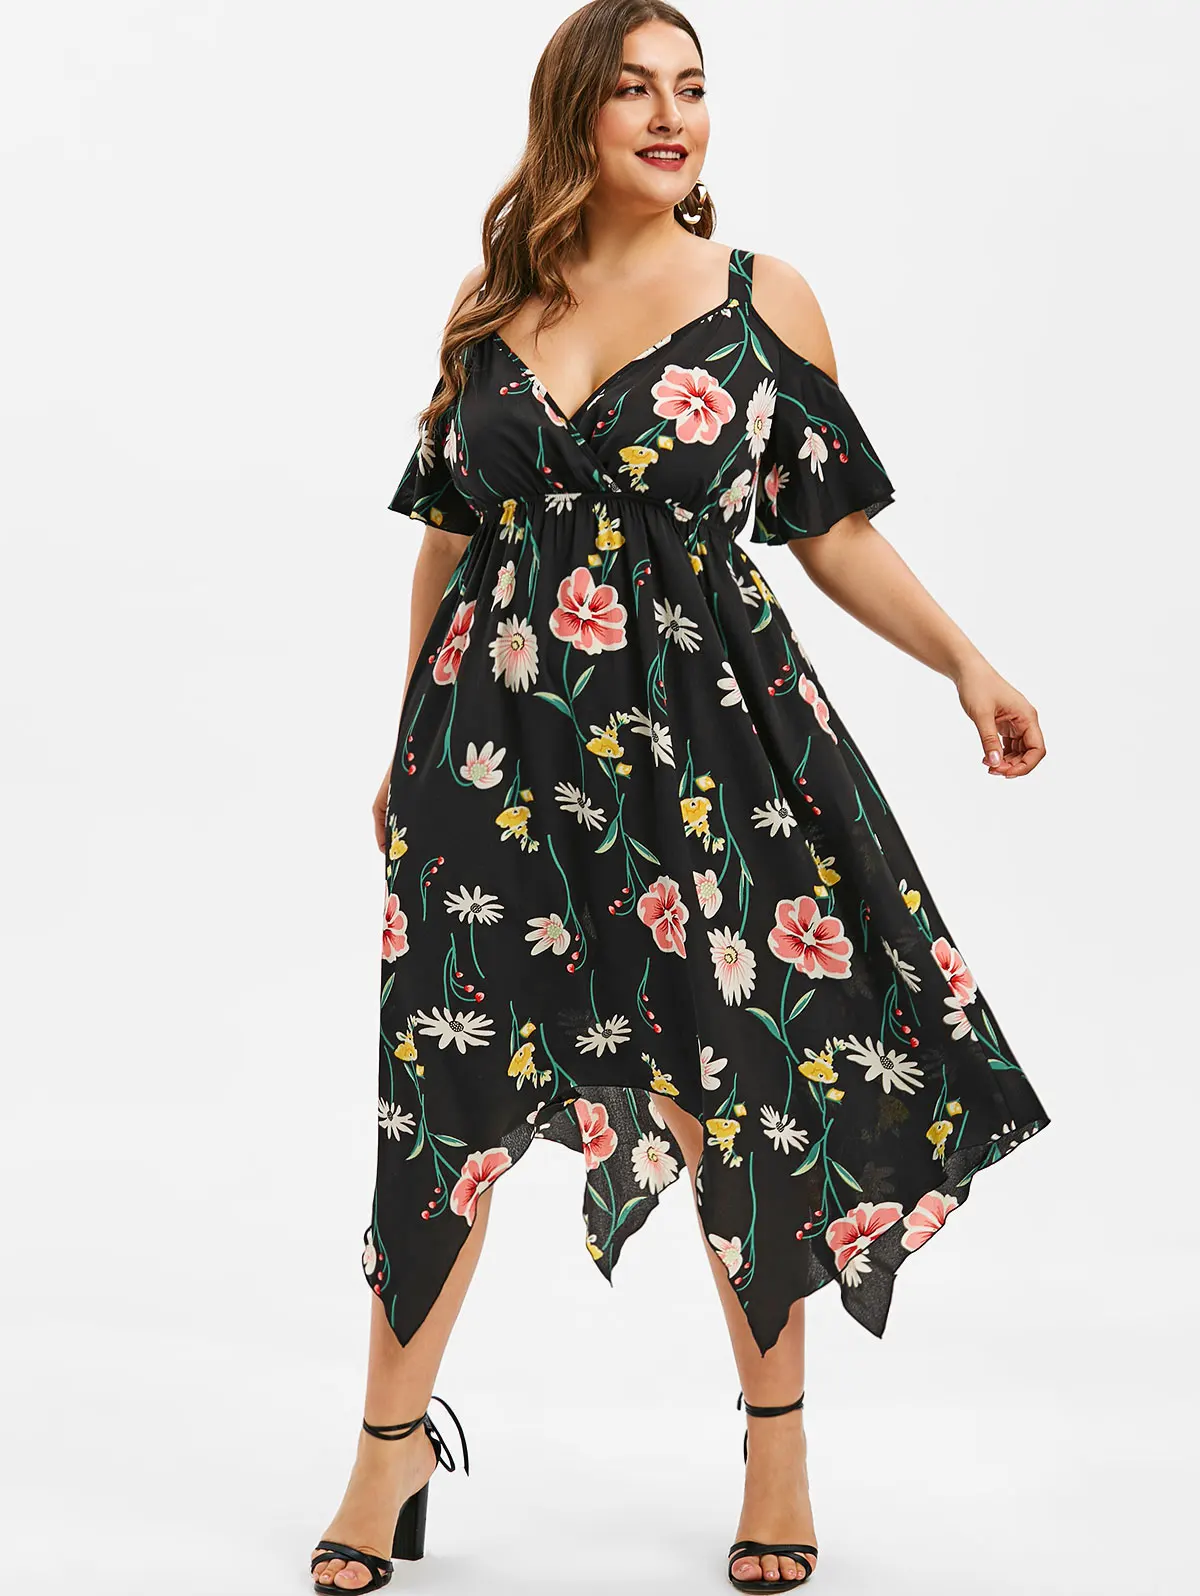 Wipalo размера плюс с коротким рукавом летнее пляжное платье в стиле бохо с открытыми плечами платье с платком цветочный принт женское платье Vestidos Femme